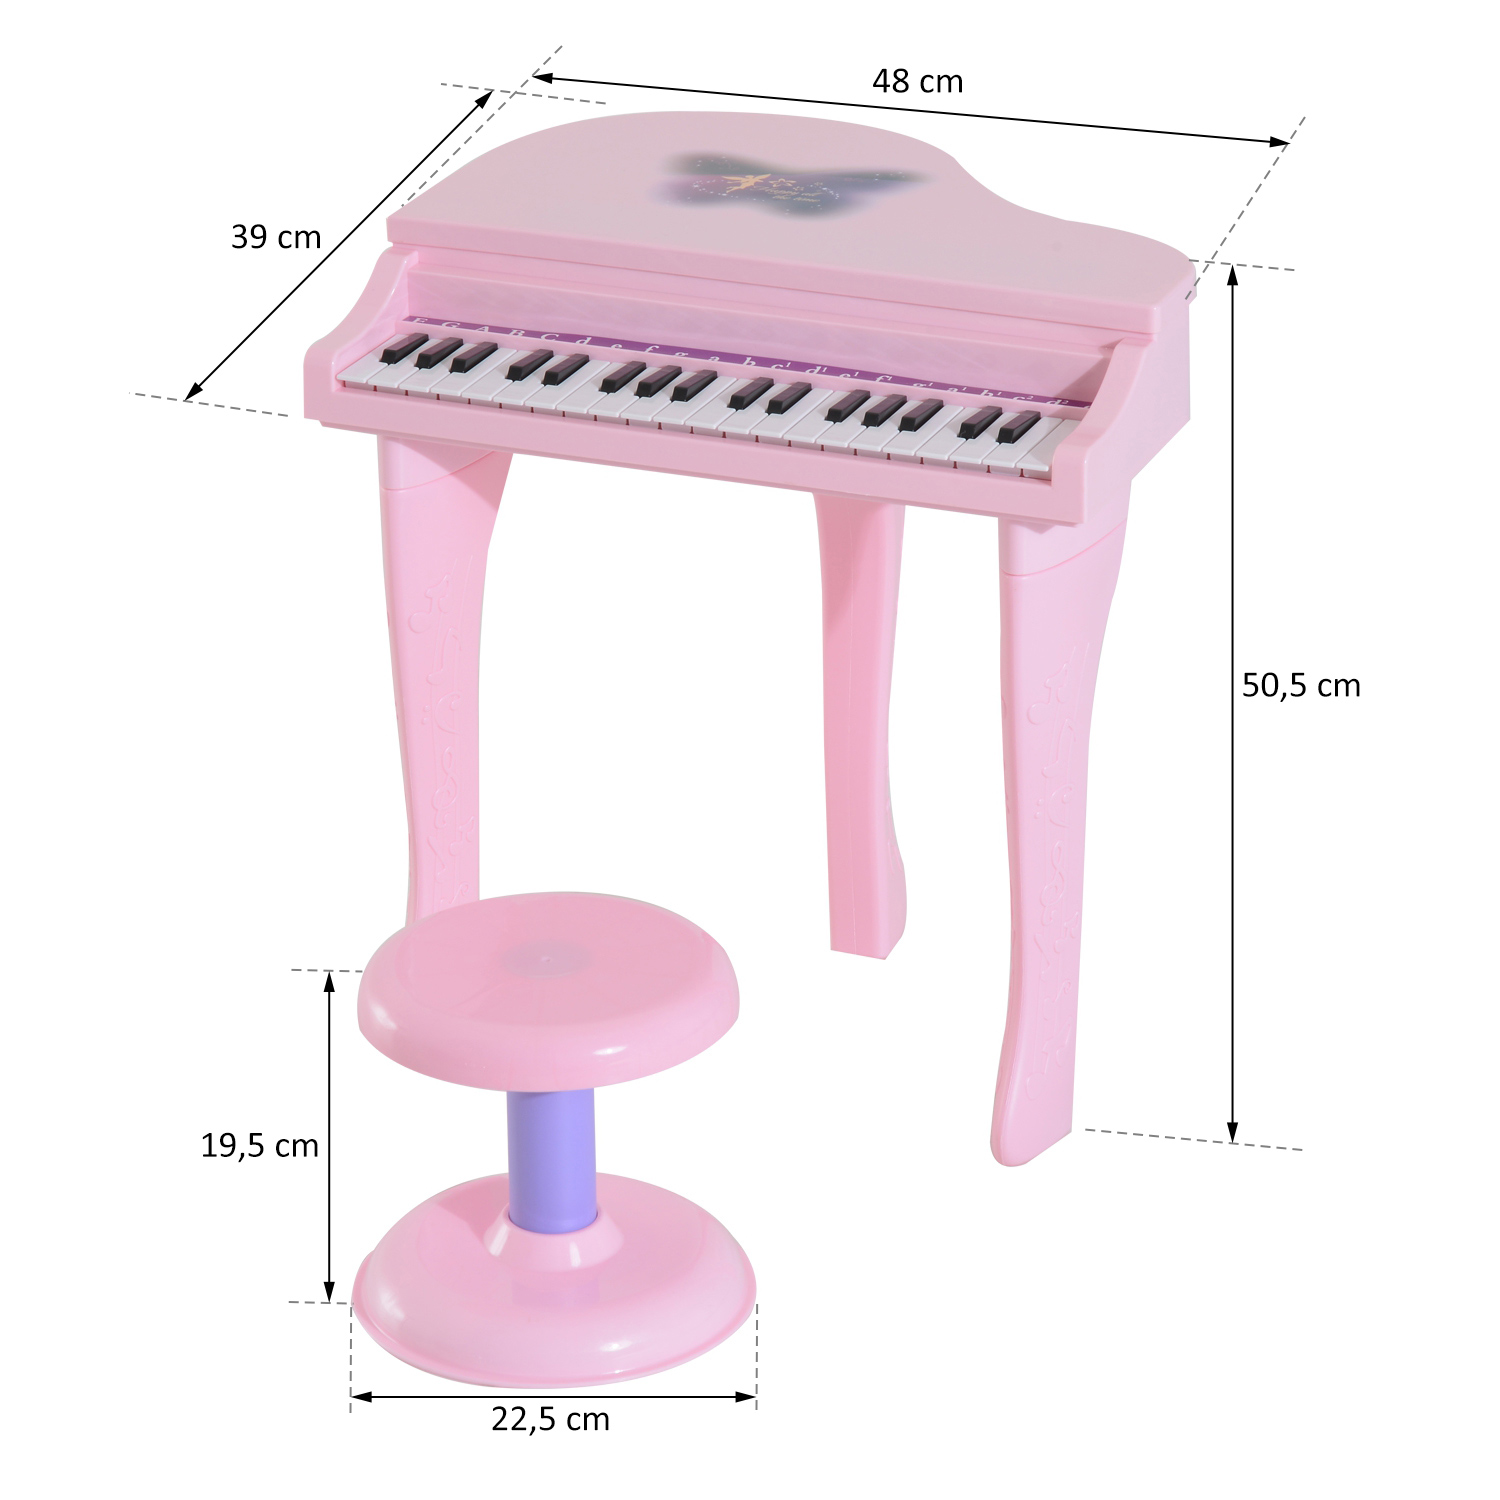 Teclado Piano Musical Iniciante Infantil 37 Teclas Microfone Cor Preto